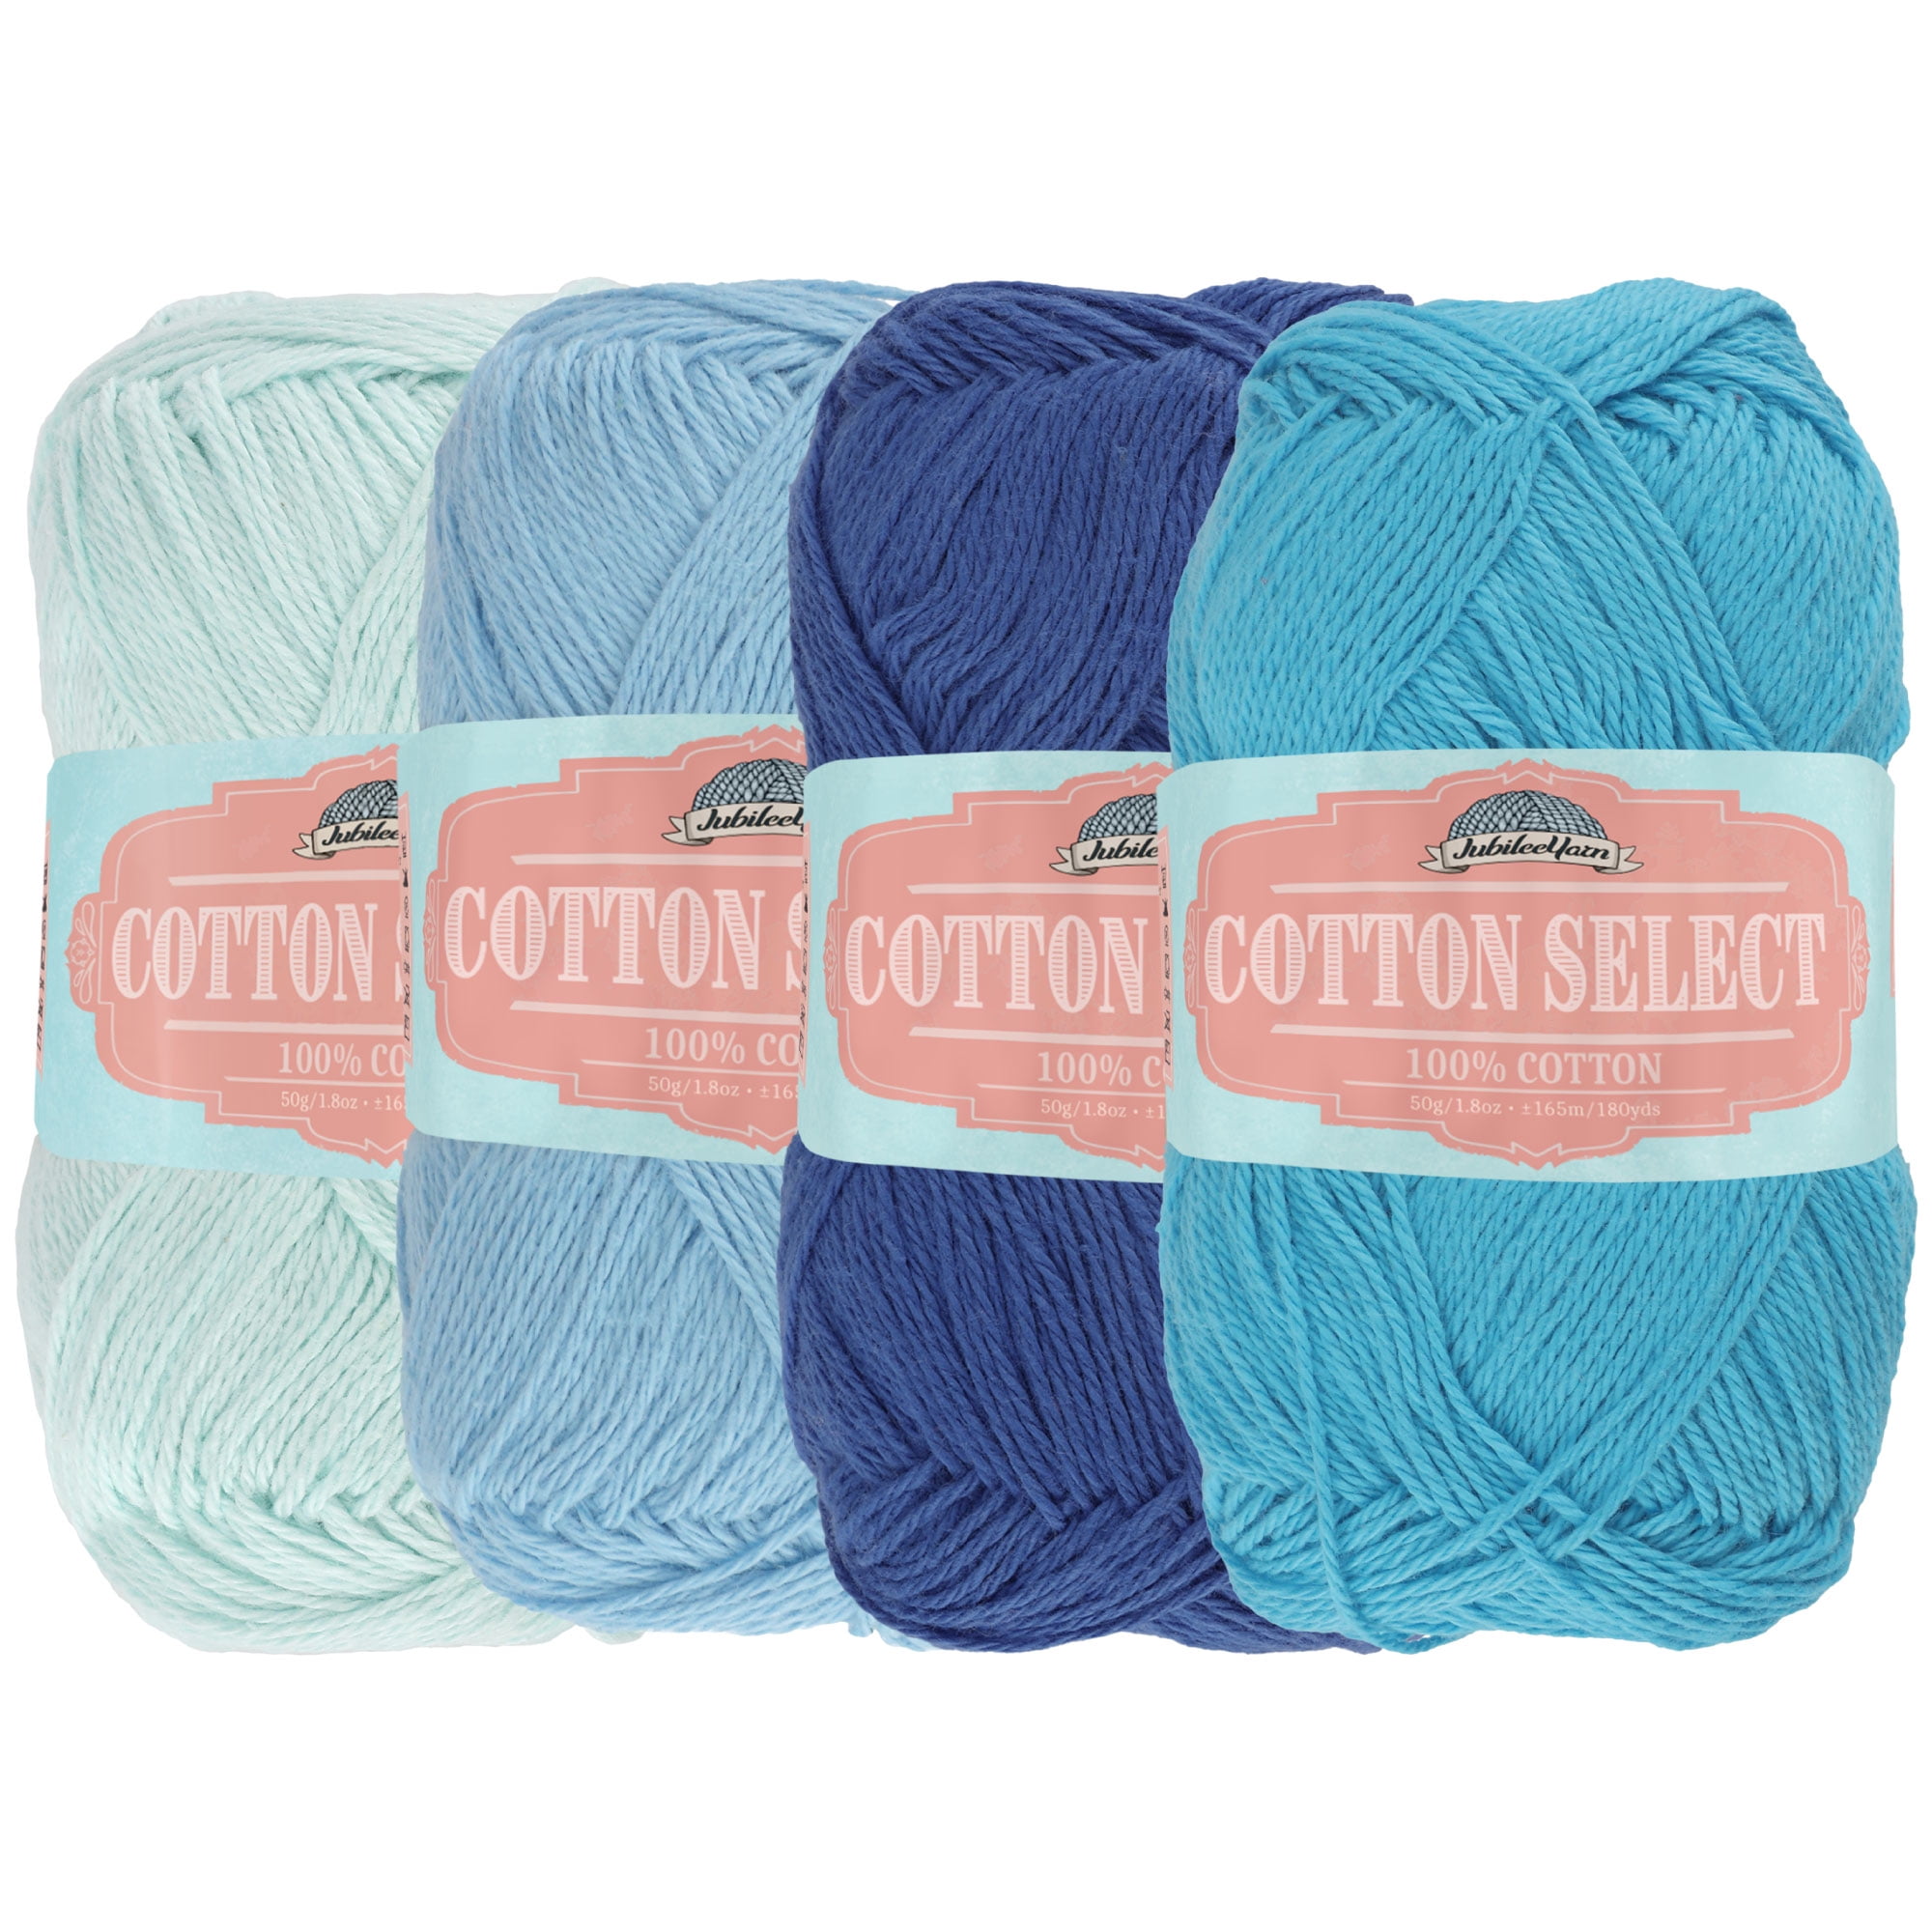 Knit Picks Billow Cadet Blue Cotton Yarn 200 grams